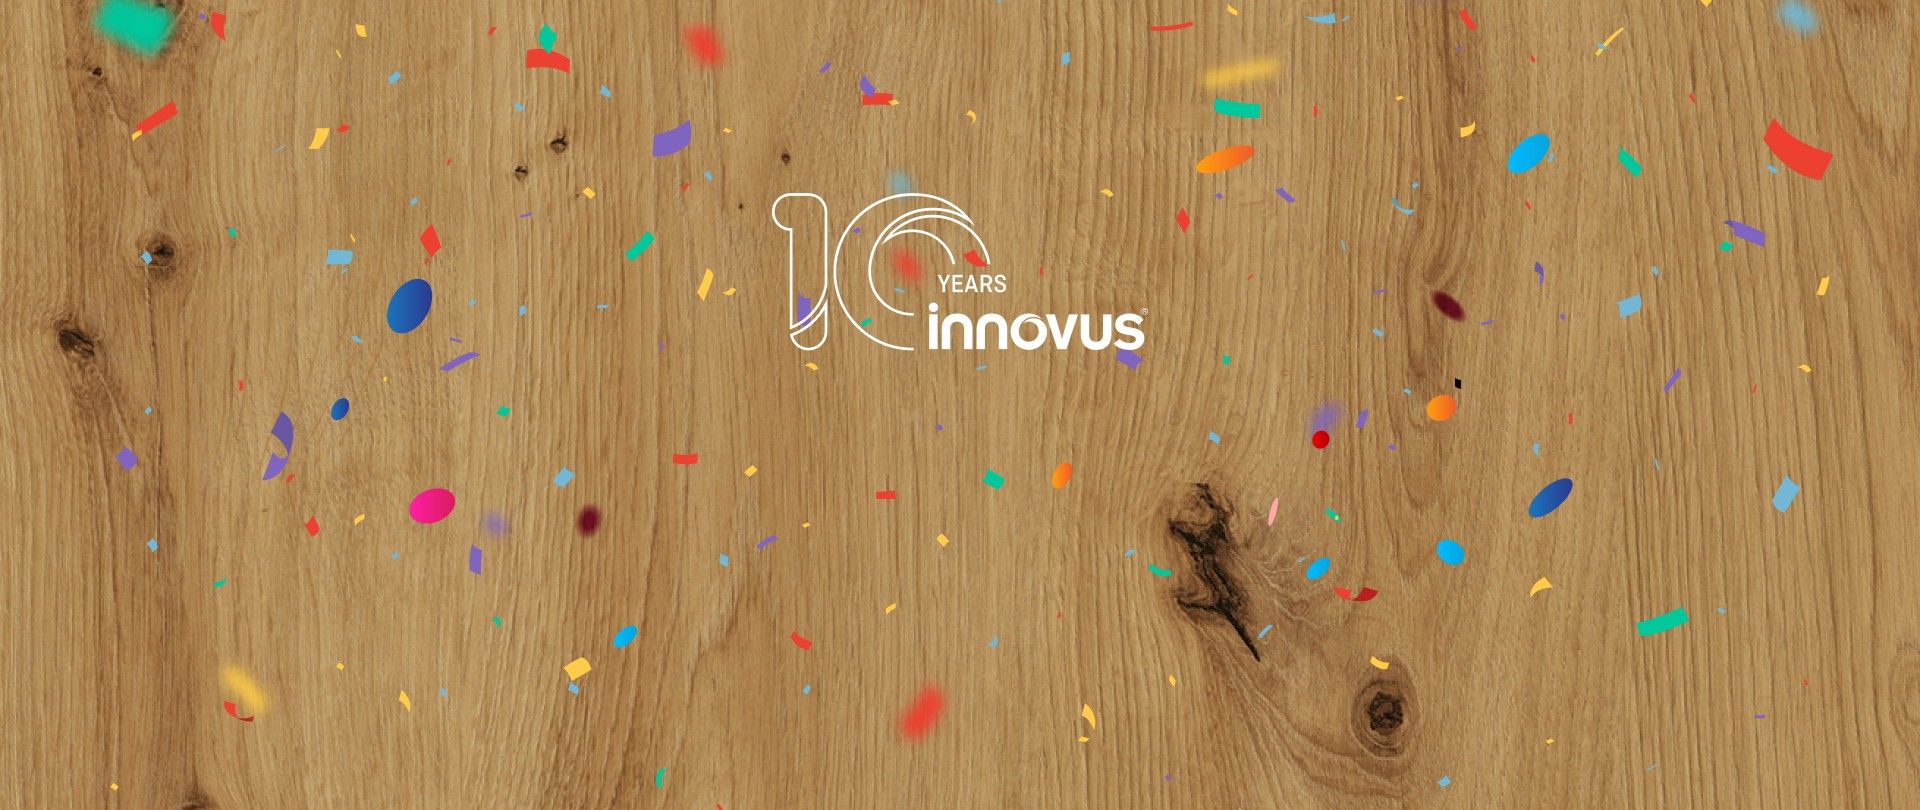 Marca de produtos decorativos Innovus celebra 10 anos